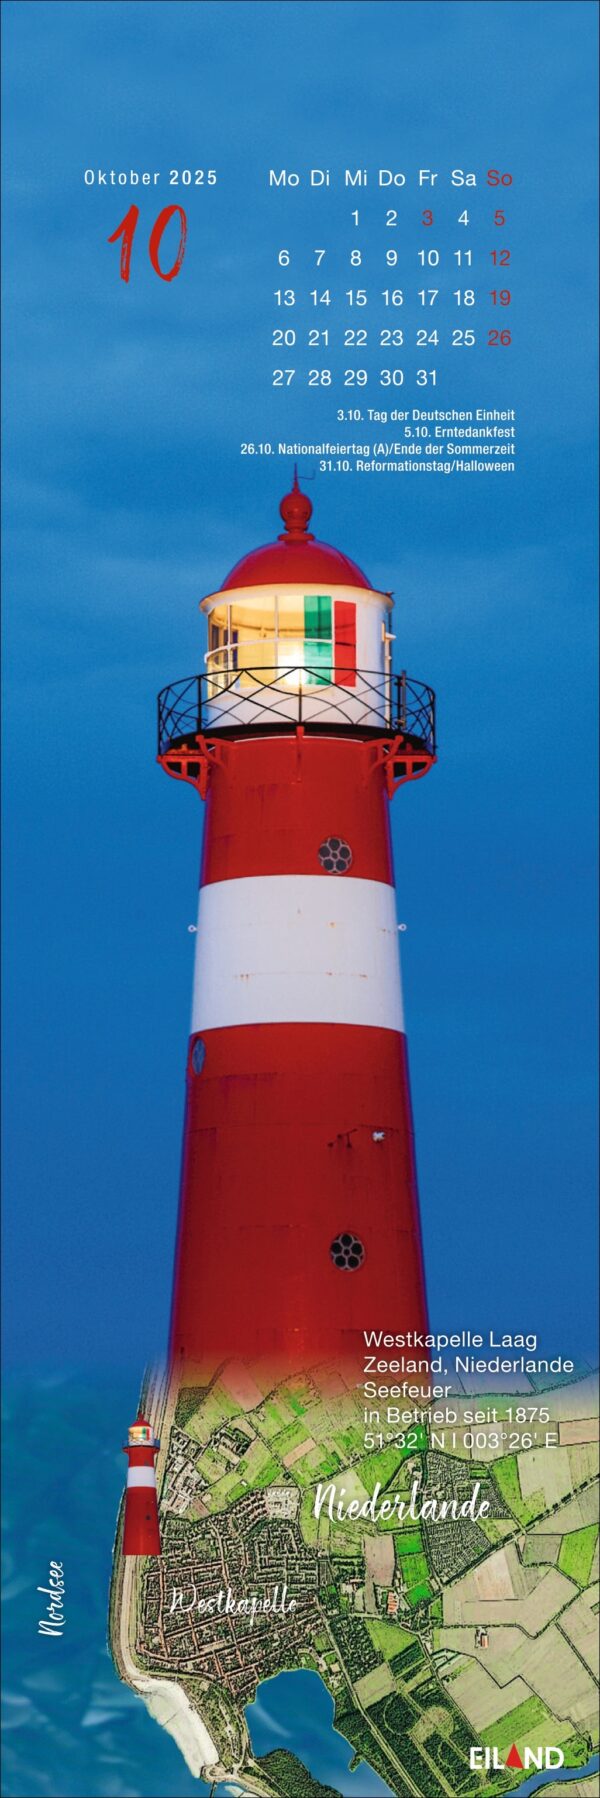 2025 LilleEiland - Kalender mit einem lebendigen Bild eines rot-weißen Leuchtturms auf LilleEiland vor einem klaren blauen Himmel. Unter dem Leuchtturm wird eine Karte in die Struktur eingeblendet.